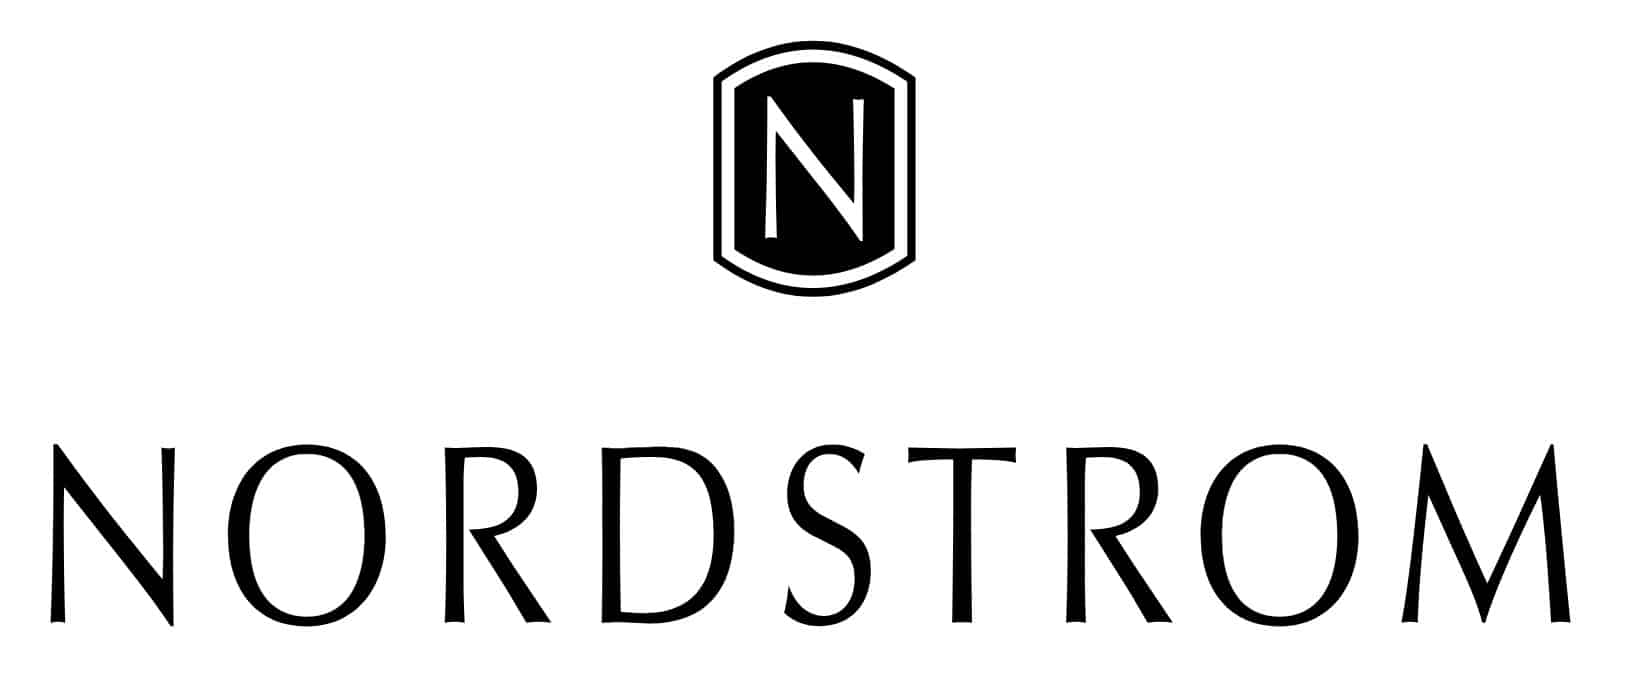 Nordstorm - Shippn Blog